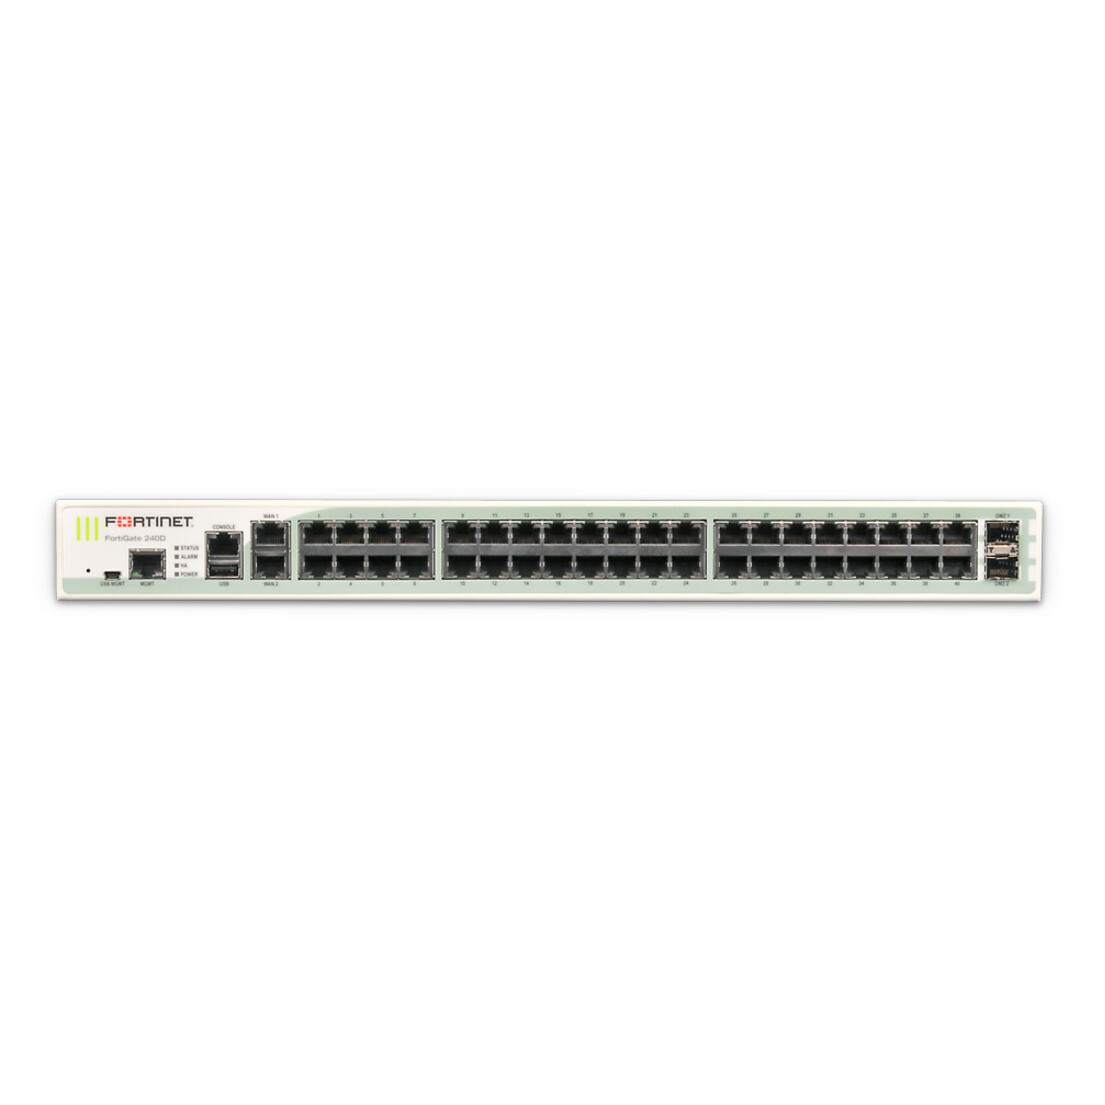 Fortinet FortiGate 240D Network Security/Firewall Appliance42 Port1000Base-T, 1000Base-XGigabit Ethernet42 x RJ-452 Total Exp… FG-240D-USG